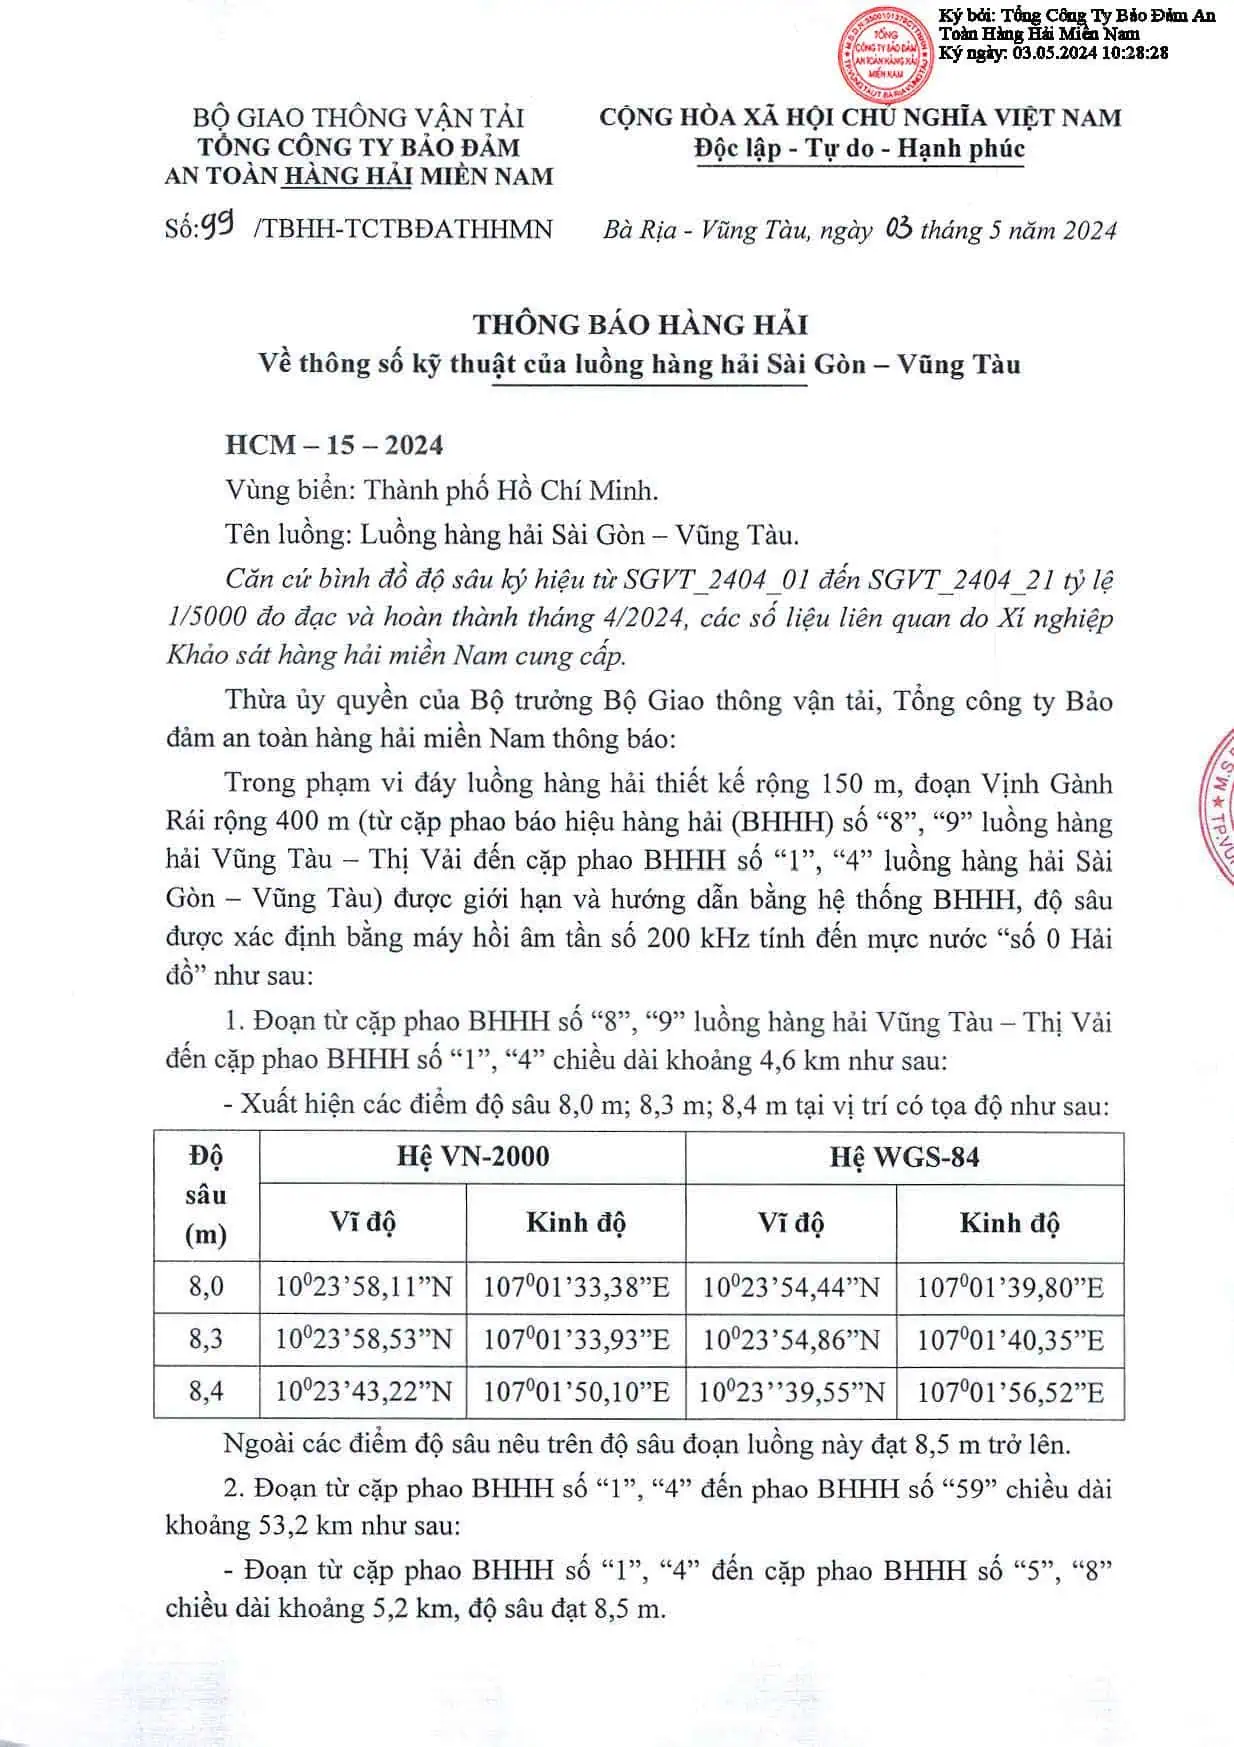 Thông báo hàng hải về thông số kỹ thuật của luồng hải hải Sài Gòn - Vũng Tàu 3.5.2024